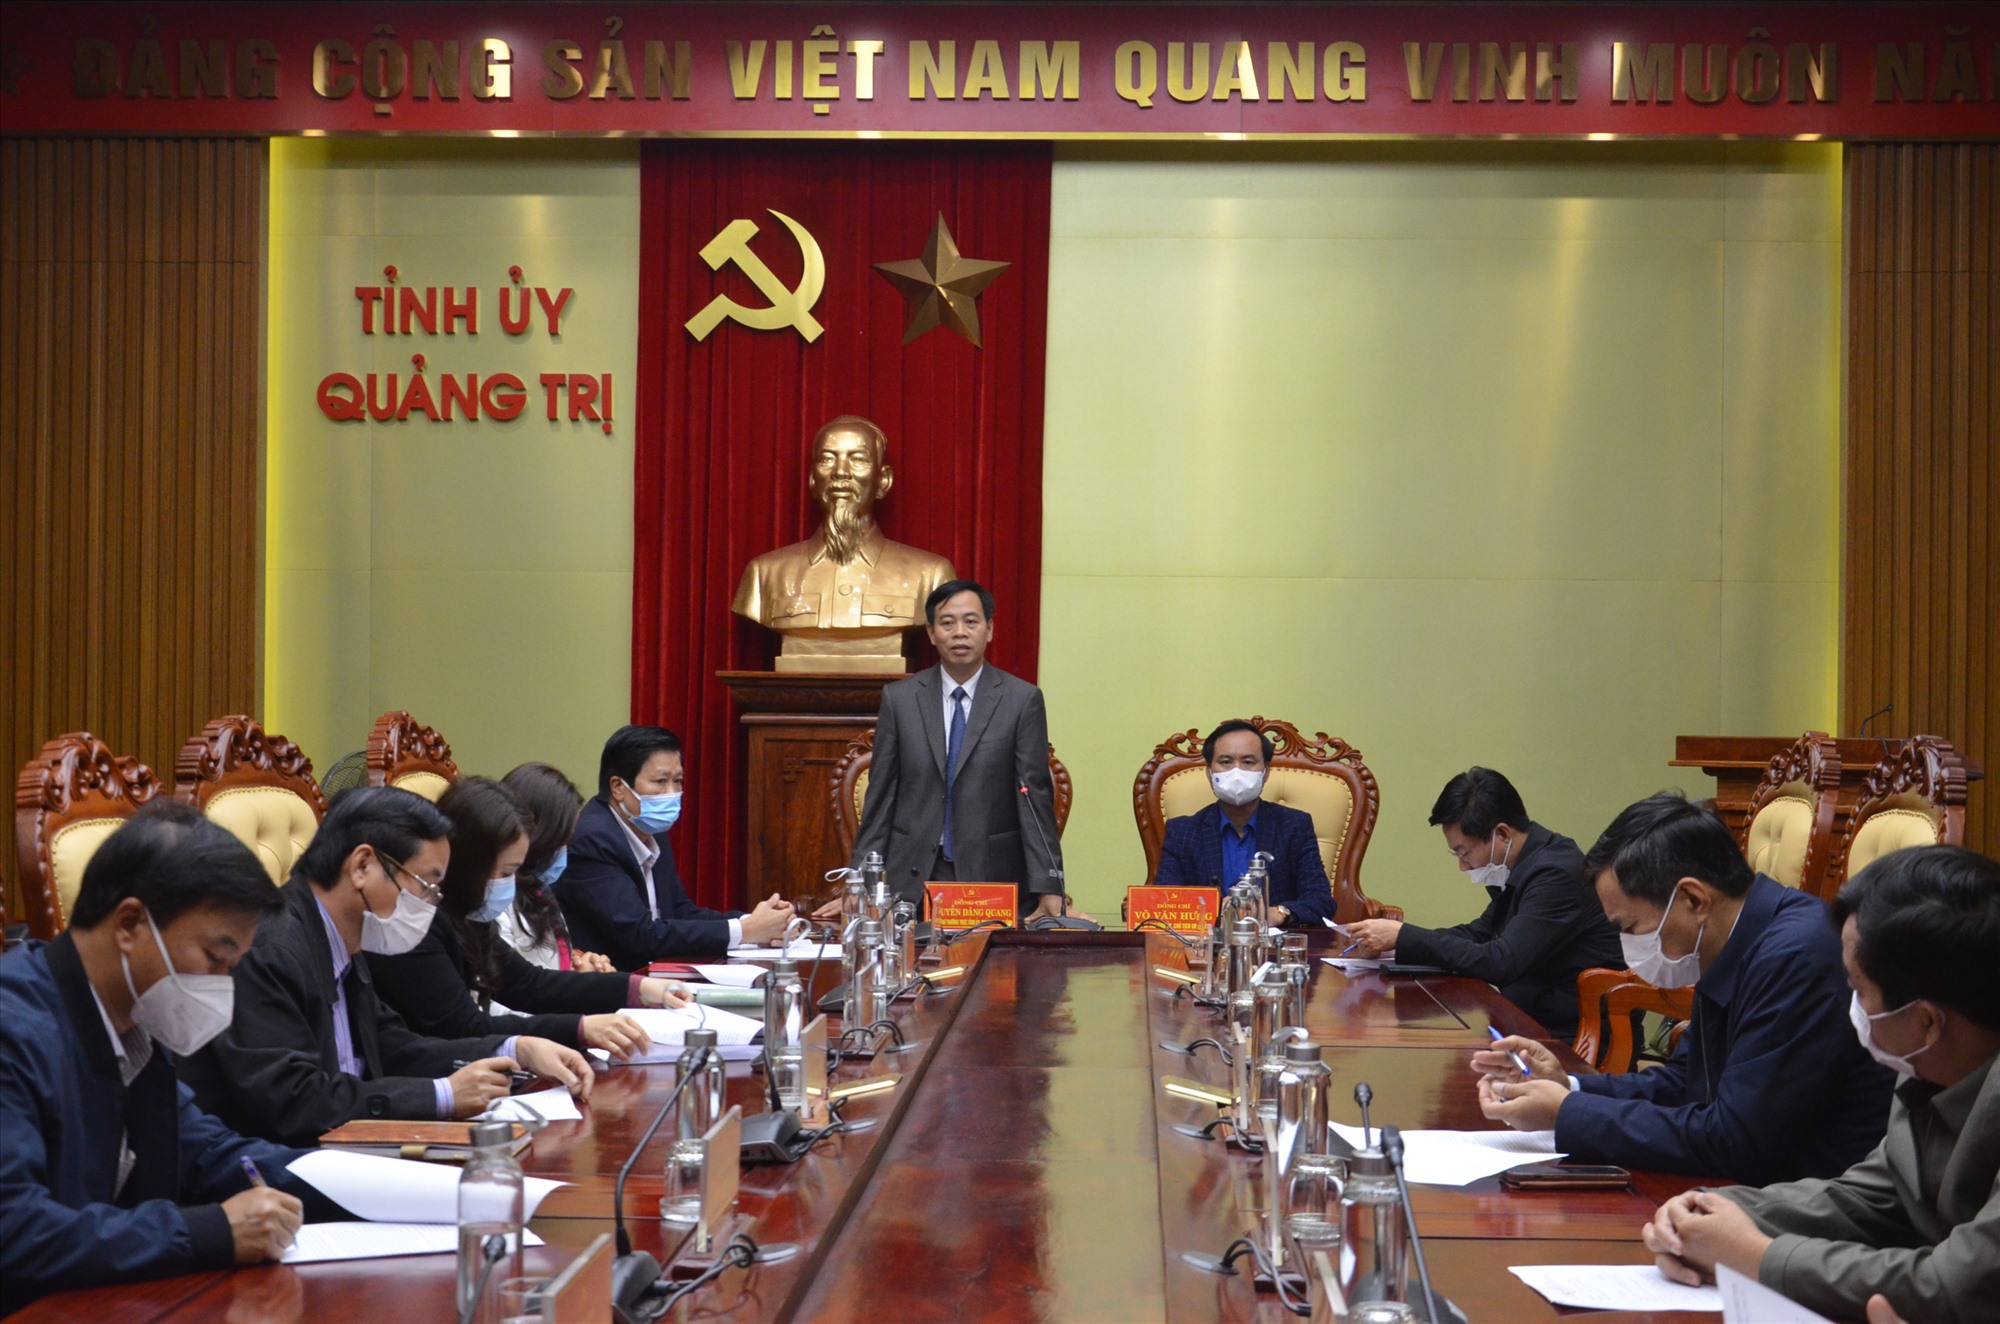 Phó Bí thư Thường trực Tỉnh ủy Nguyễn Đăng Quang khẳng định, chủ trương thi tuyển chức danh cấp phó các cơ quan chuyên môn thuộc UBND tỉnh đã bám sát theo các quy định của Đảng và Nhà nước về đổi mới công tác cán bộ - Ảnh: L.M